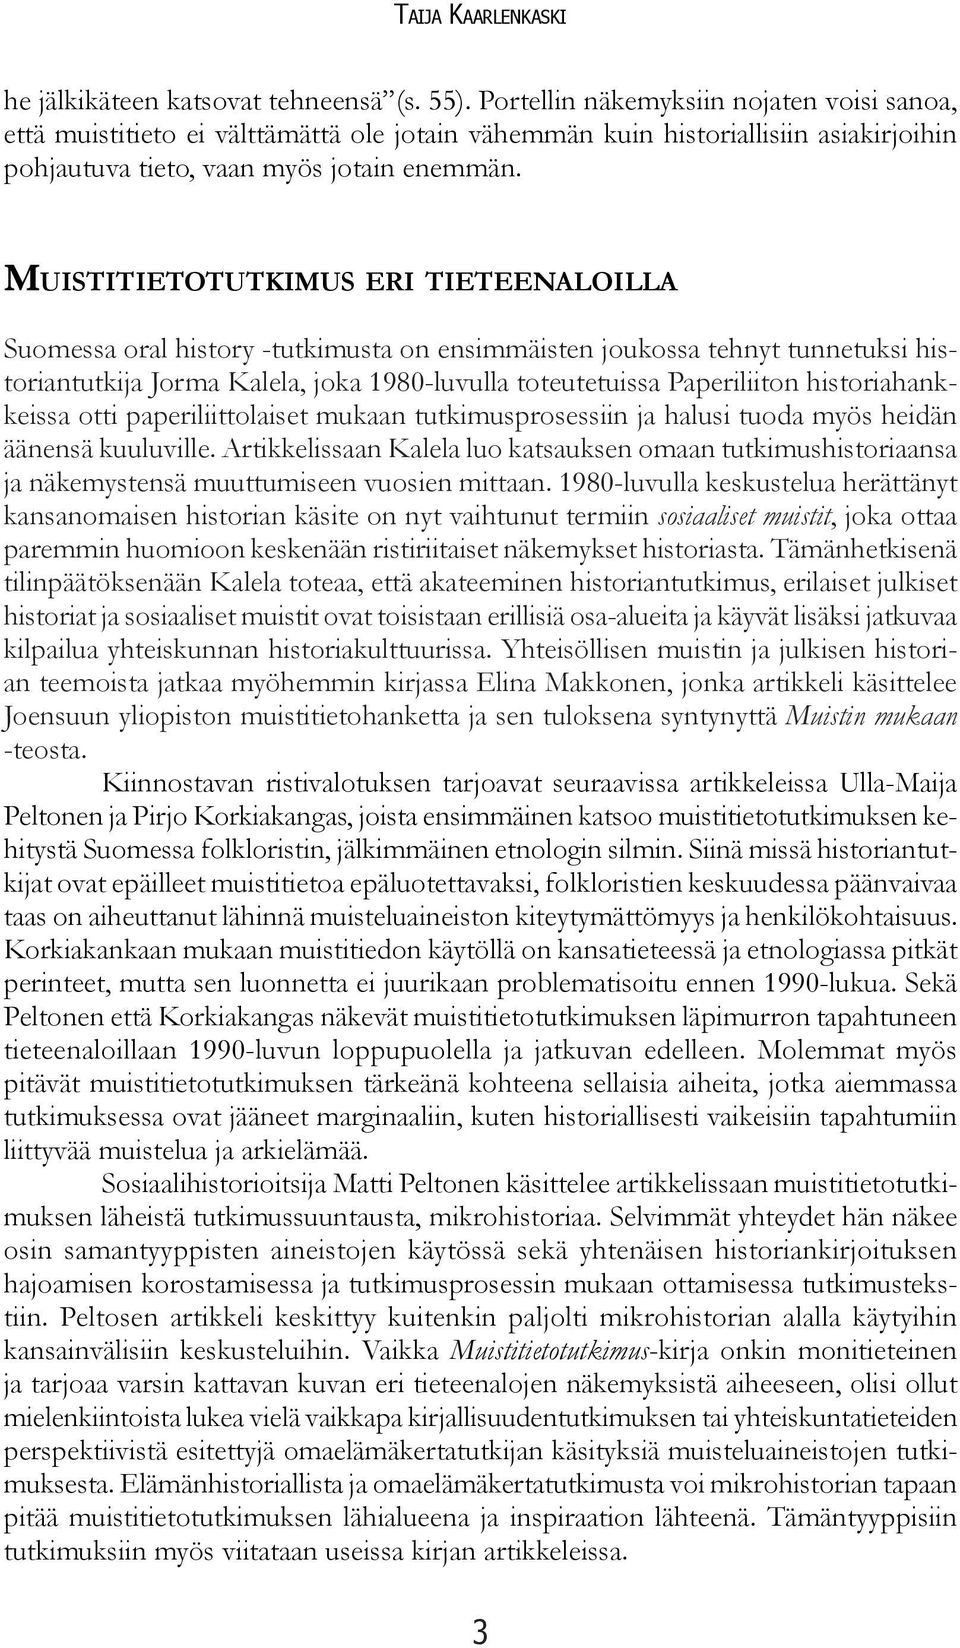 MUISTITIETOTUTKIMUS ERI TIETEENALOILLA Suomessa oral history -tutkimusta on ensimmäisten joukossa tehnyt tunnetuksi historiantutkija Jorma Kalela, joka 1980-luvulla toteutetuissa Paperiliiton